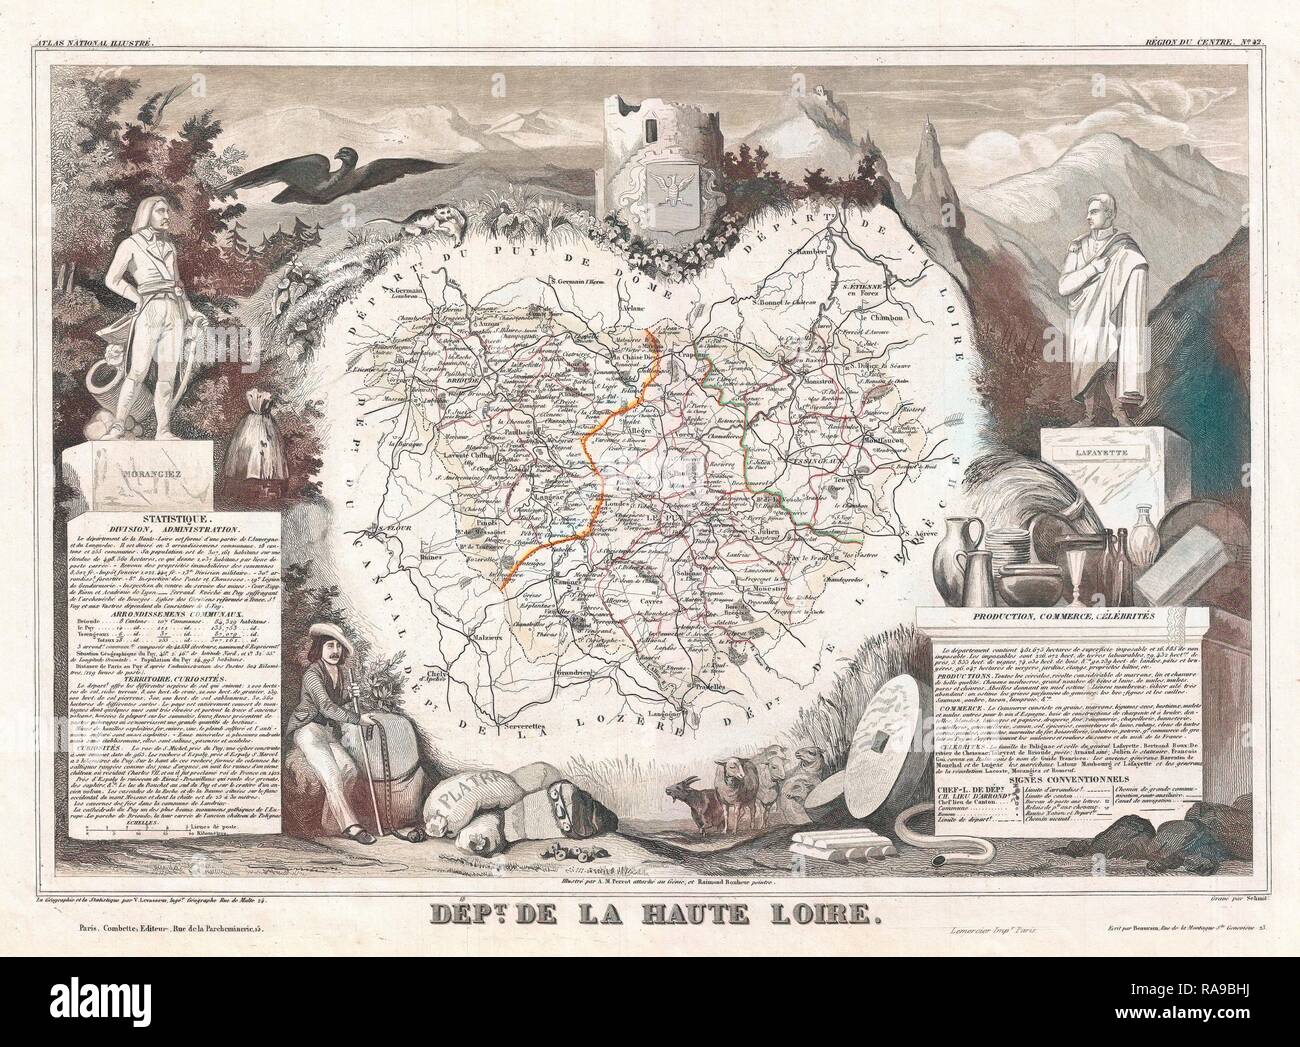 1852, Levasseur Map of the Department De La Haute Loire, France, Loire Valley Region. Reimagined by Gibon. Classic reimagined Stock Photo